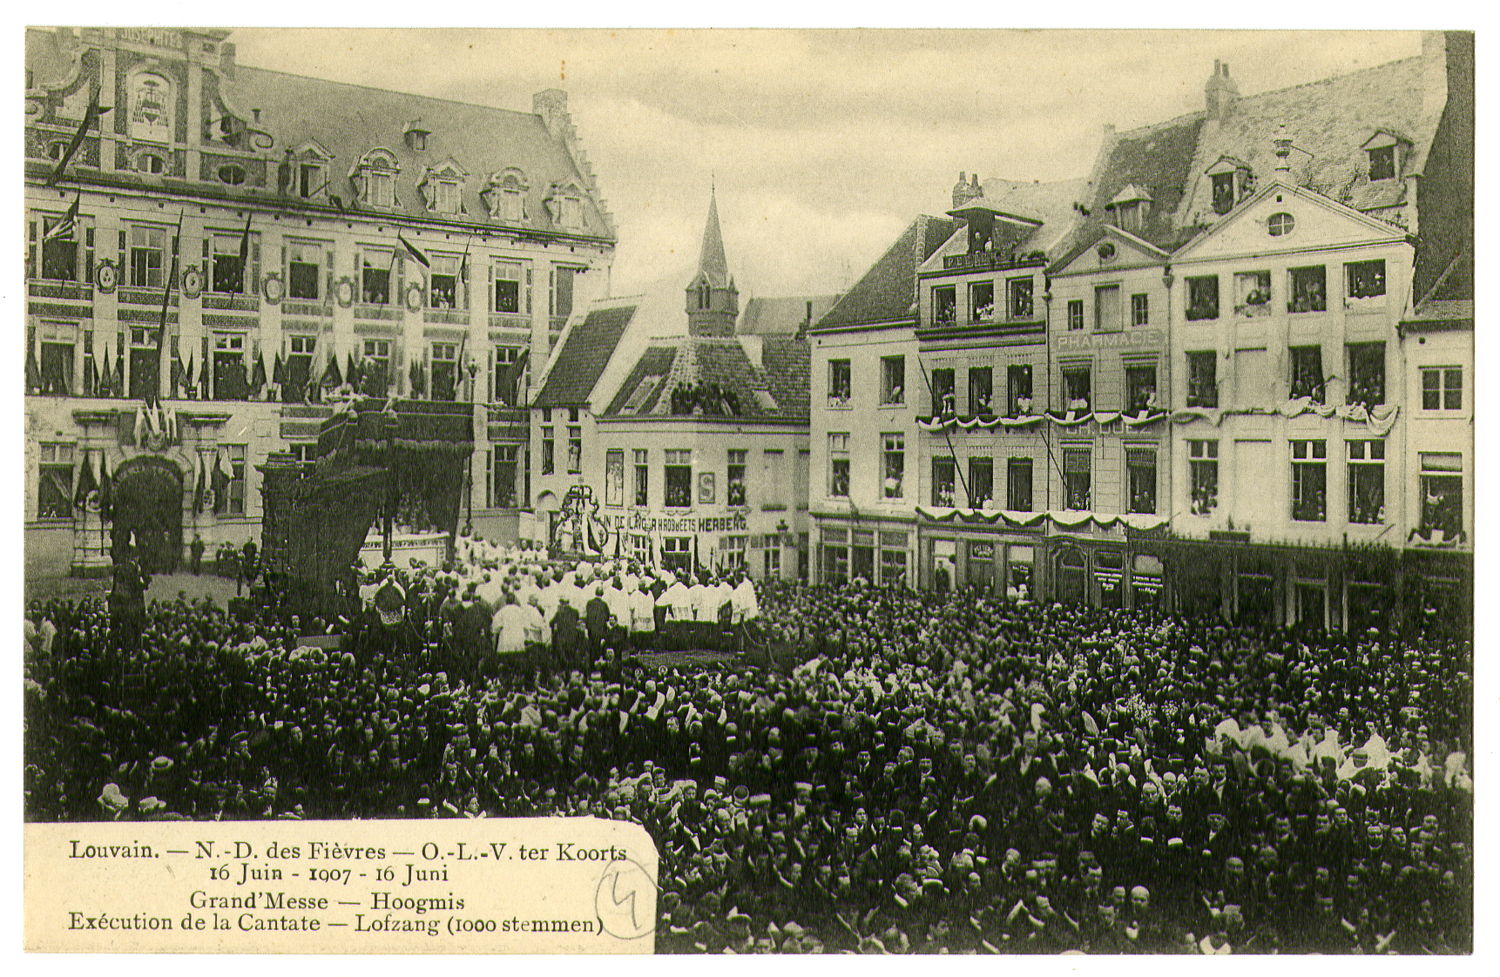 volle Oude Markt (1907) voor de kroning door kardinaal Mercier